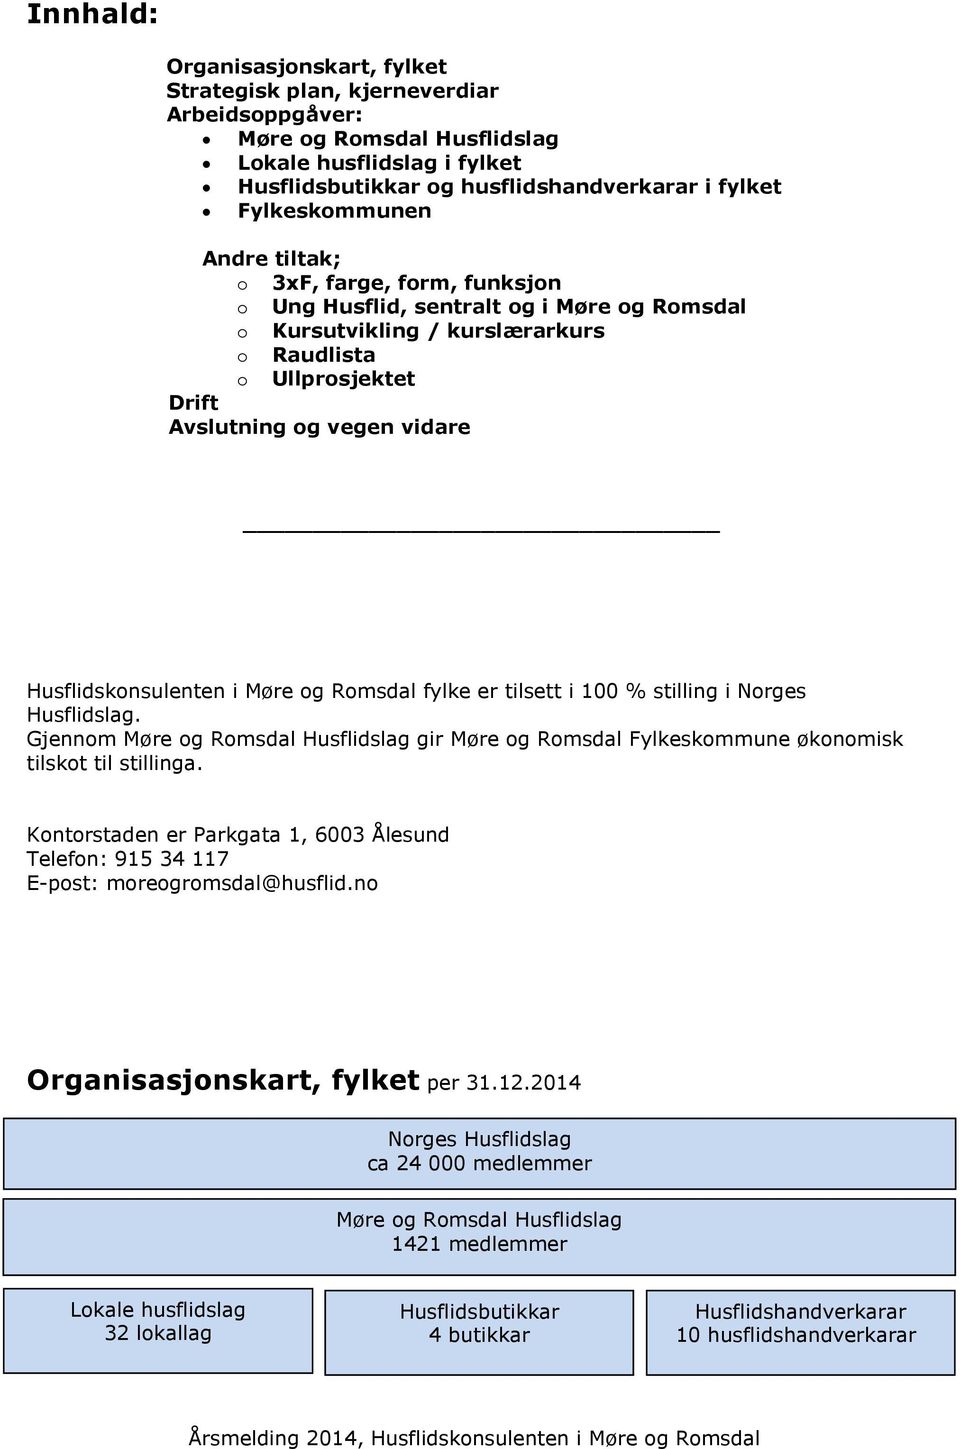 Husflidskonsulenten i Møre og Romsdal fylke er tilsett i 100 % stilling i Norges Husflidslag. Gjennom Møre og Romsdal Husflidslag gir Møre og Romsdal Fylkeskommune økonomisk tilskot til stillinga.